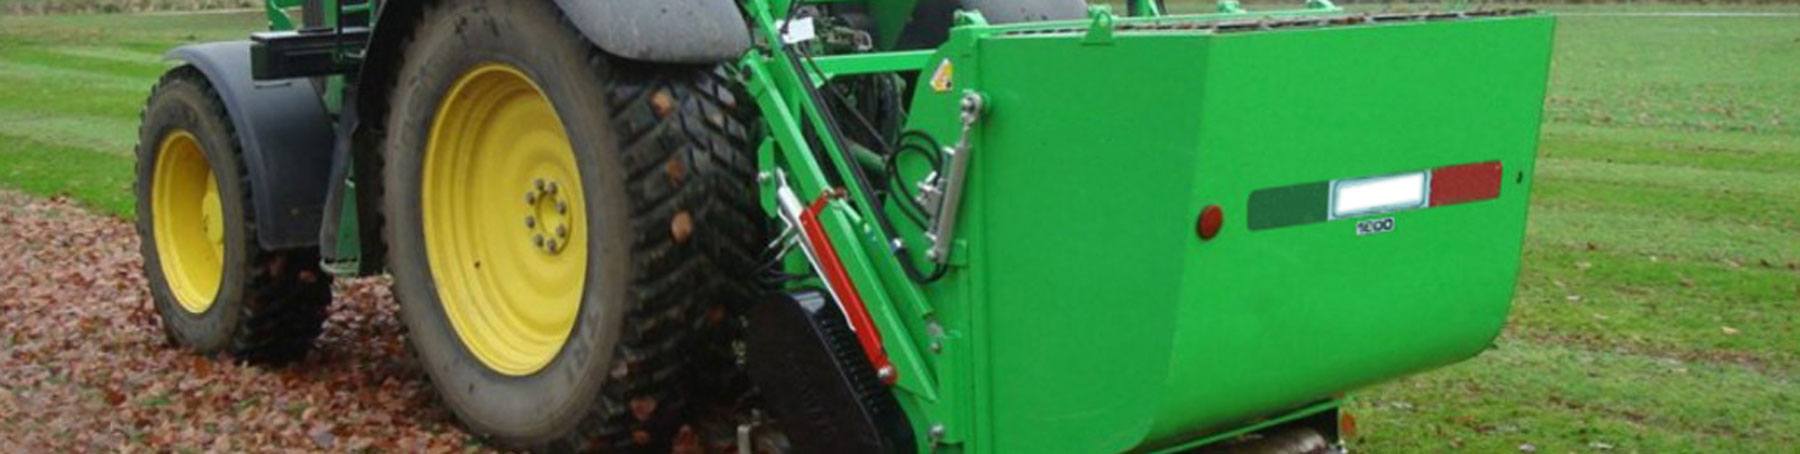 Trituradora de hierba para tractor con recogedor